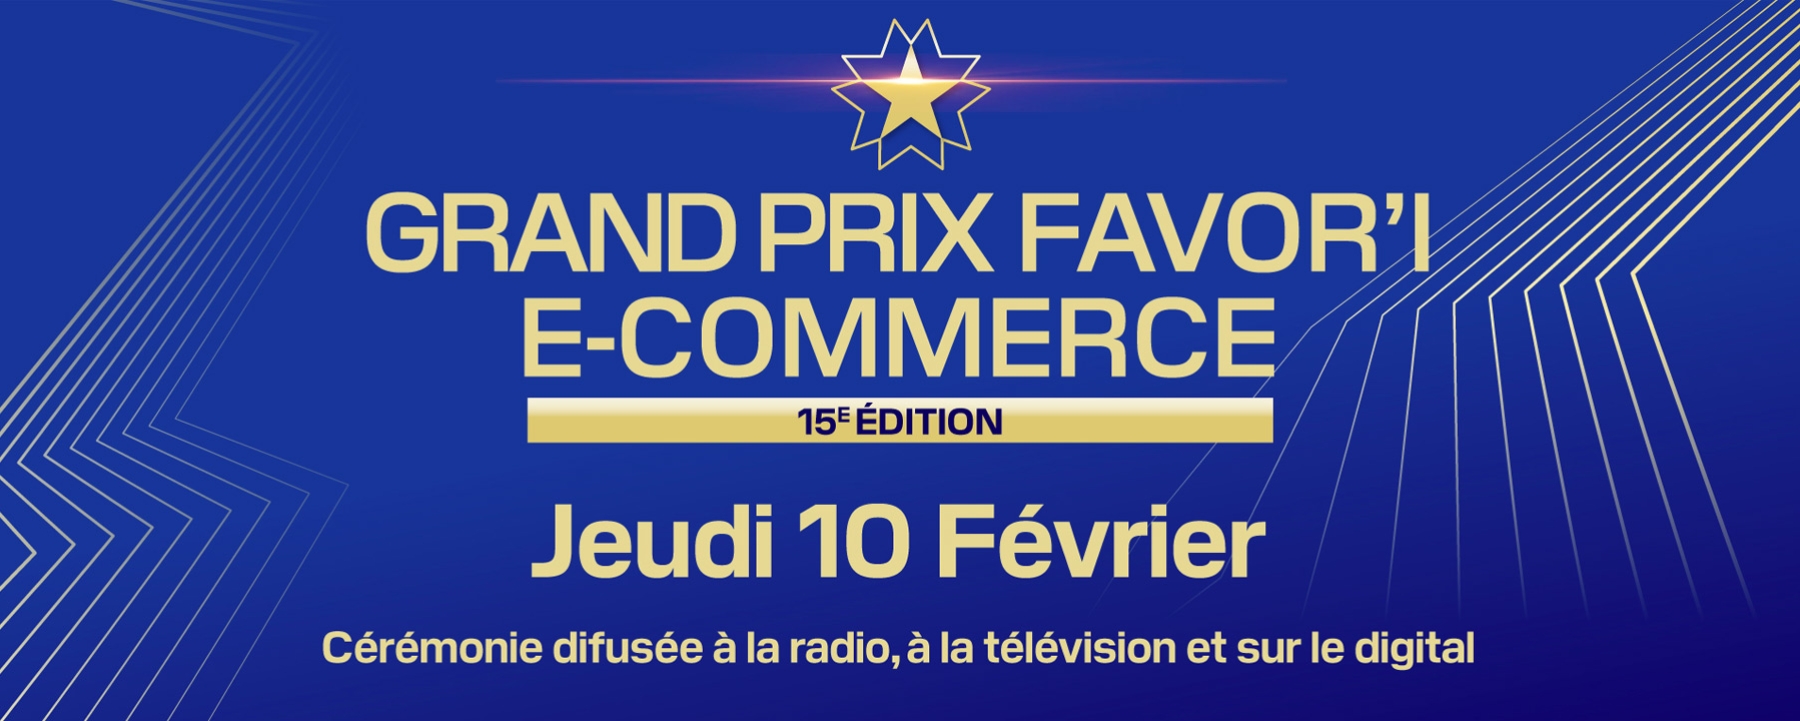 Grand Prix Favor’i e-commerce Fevad 2022